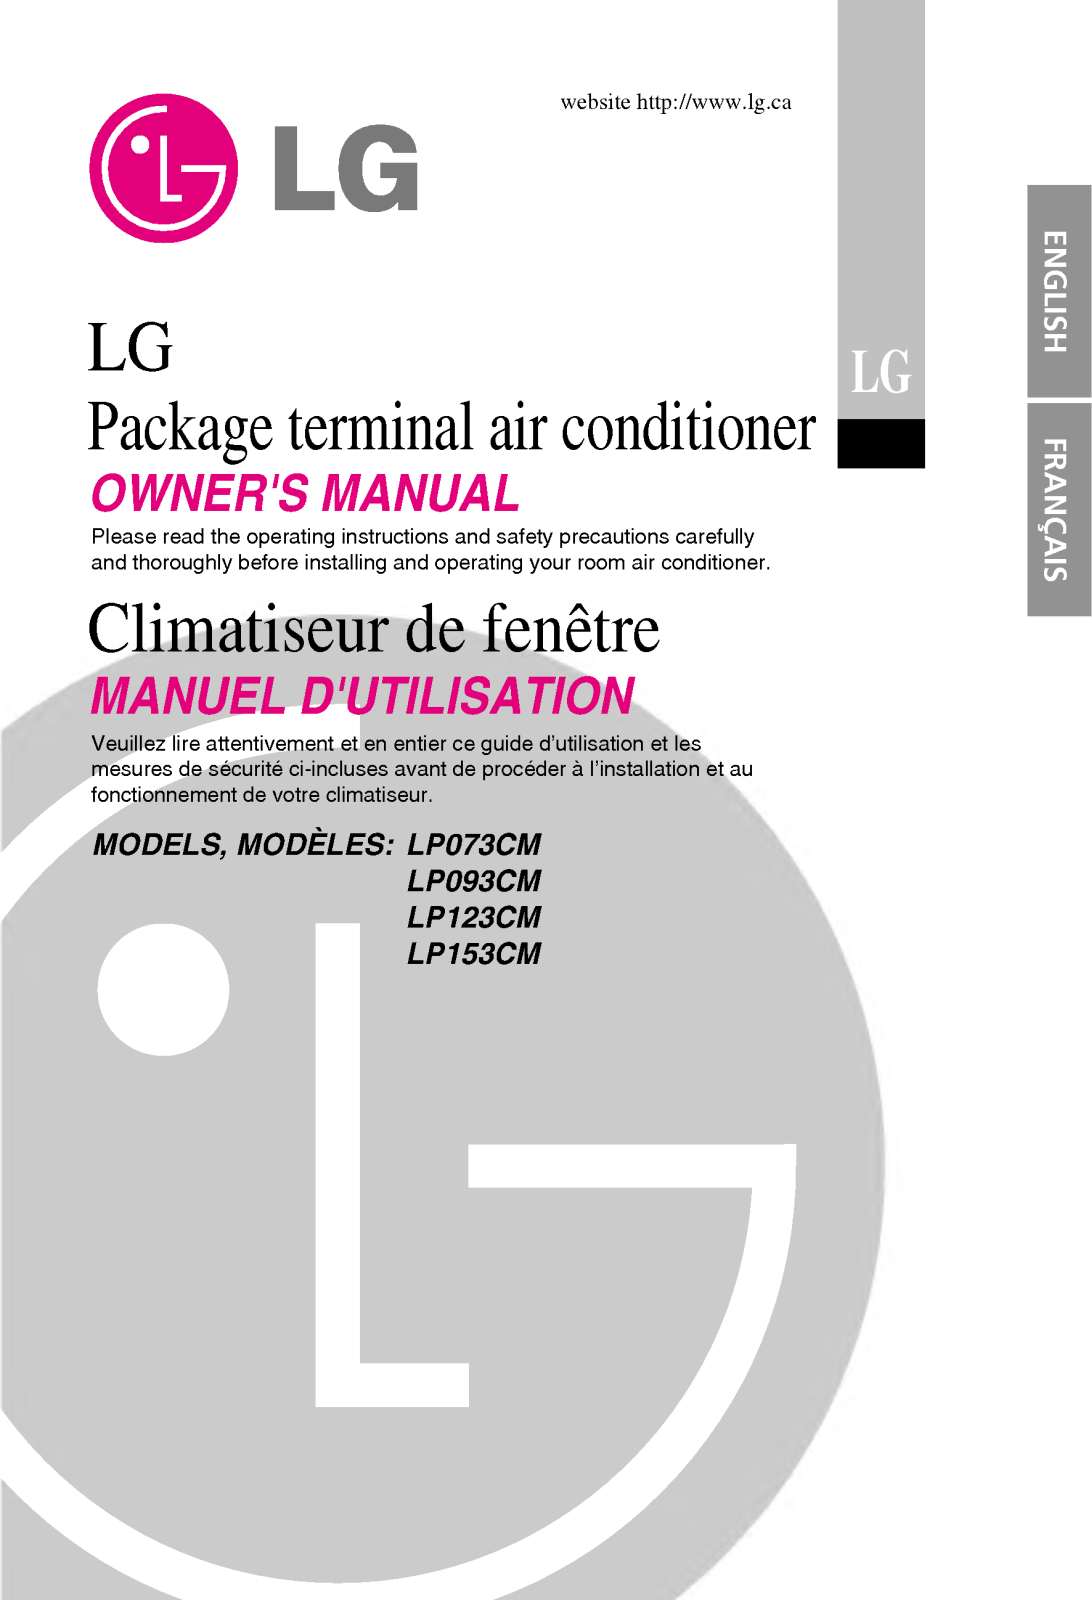 LG LP150CM5, LP090CM3, LP120CM5 User Manual